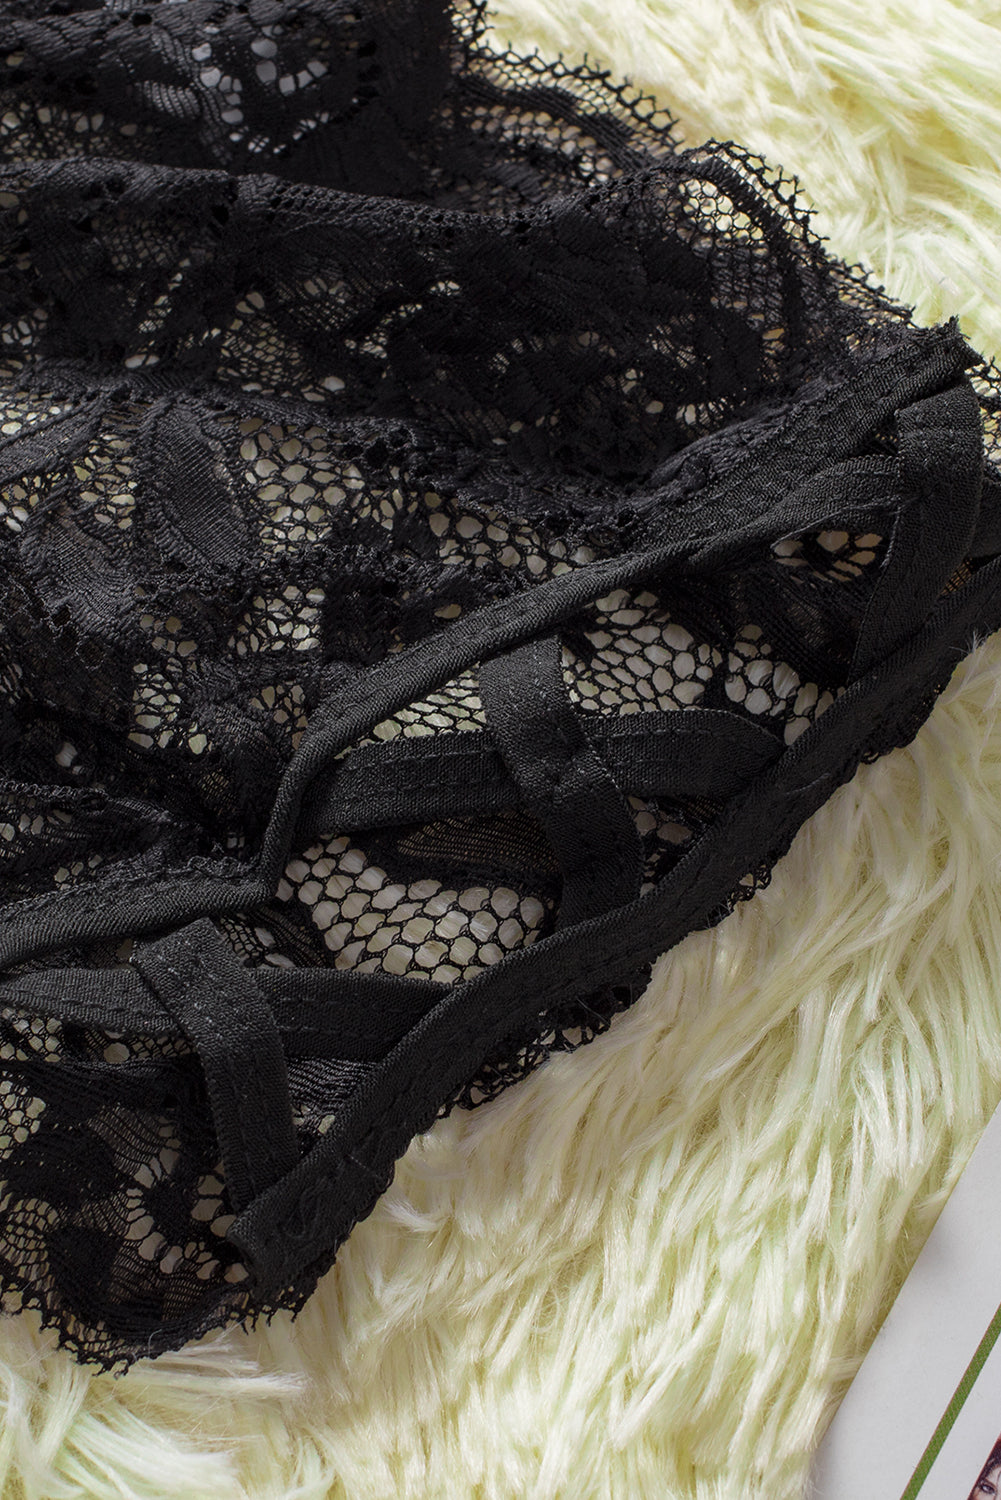 La Belle Fantastique Black Crisscross Hollow-out Sides Lace Thong Panty, panties for women